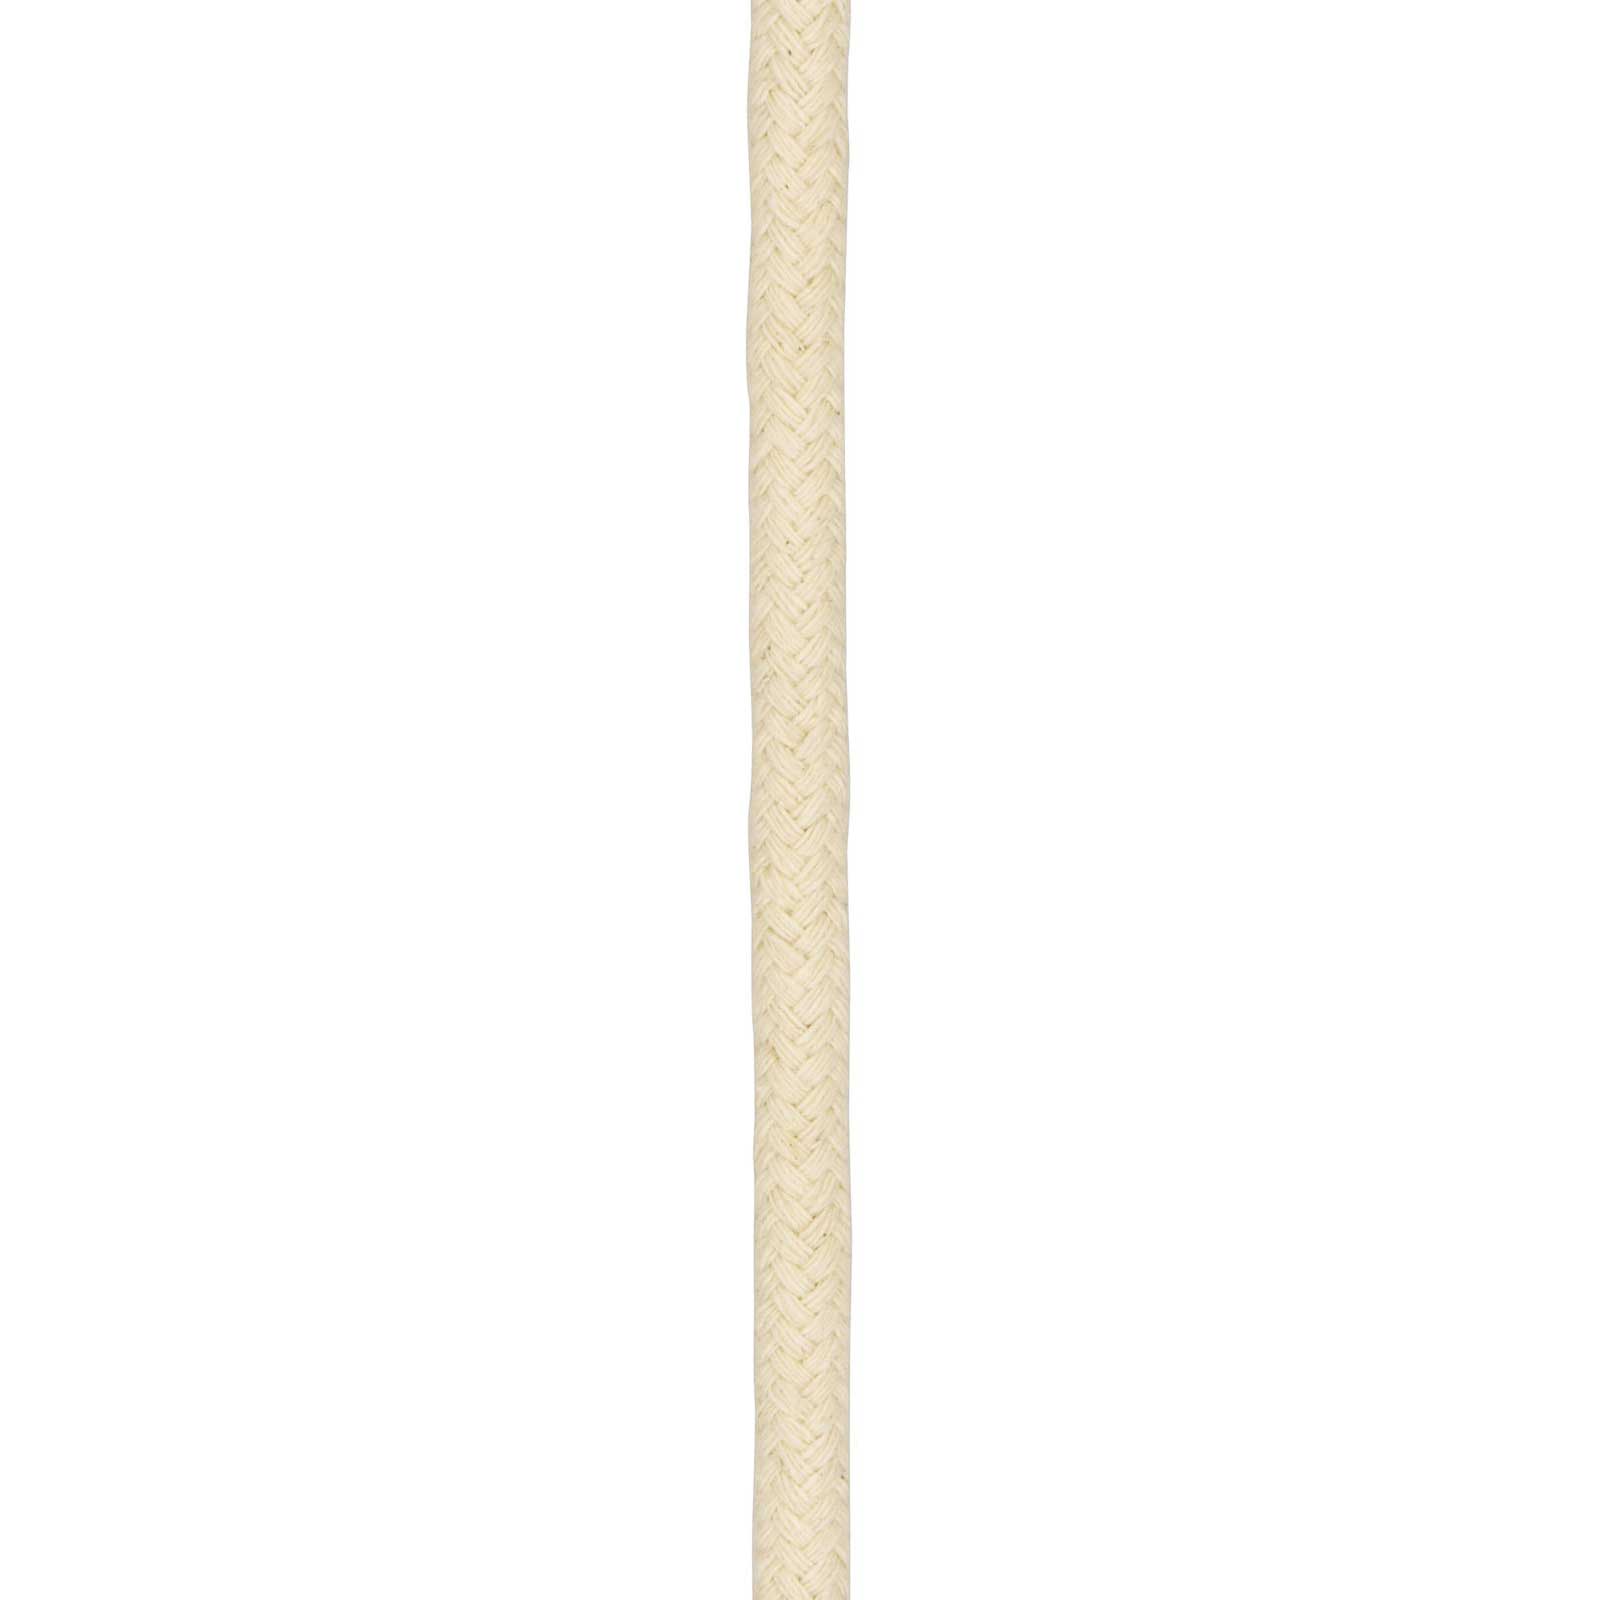 Rep för kalvarnas lek bomull på spole 8 mm